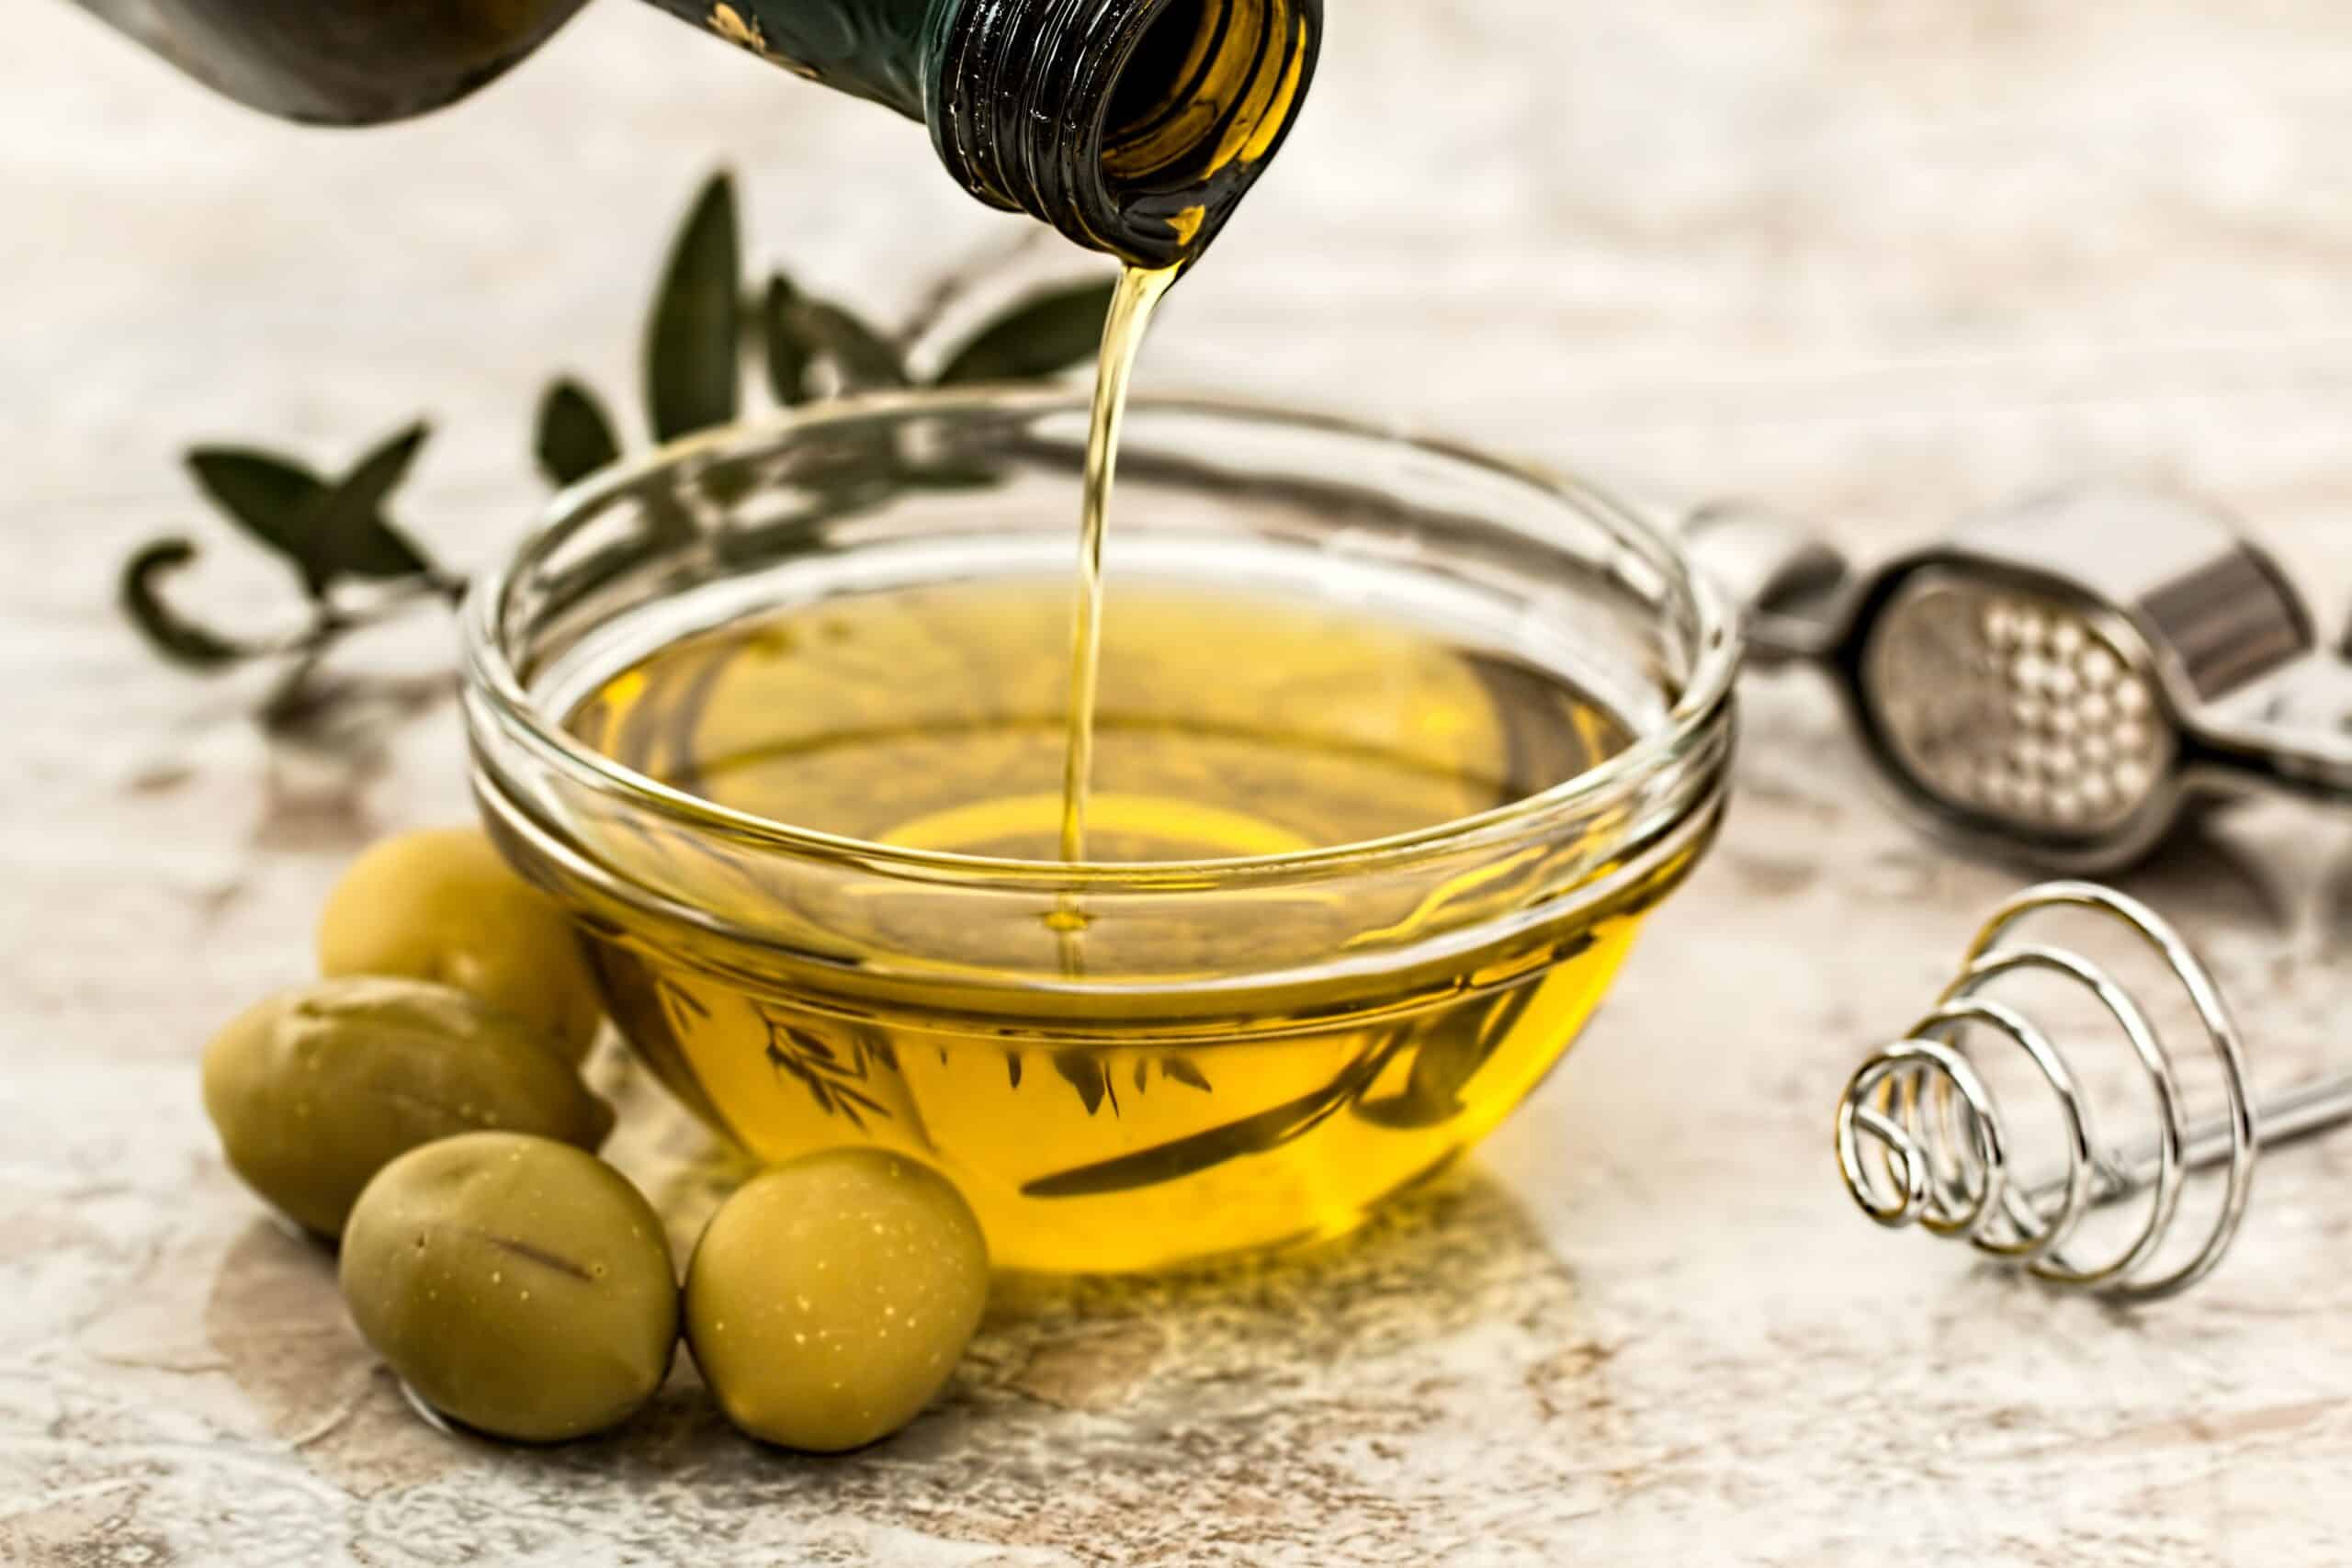 Les bienfaits de l'huile d'olive pour la santé : propriétés antioxydantes, anti-inflammatoires et cardiovasculaires